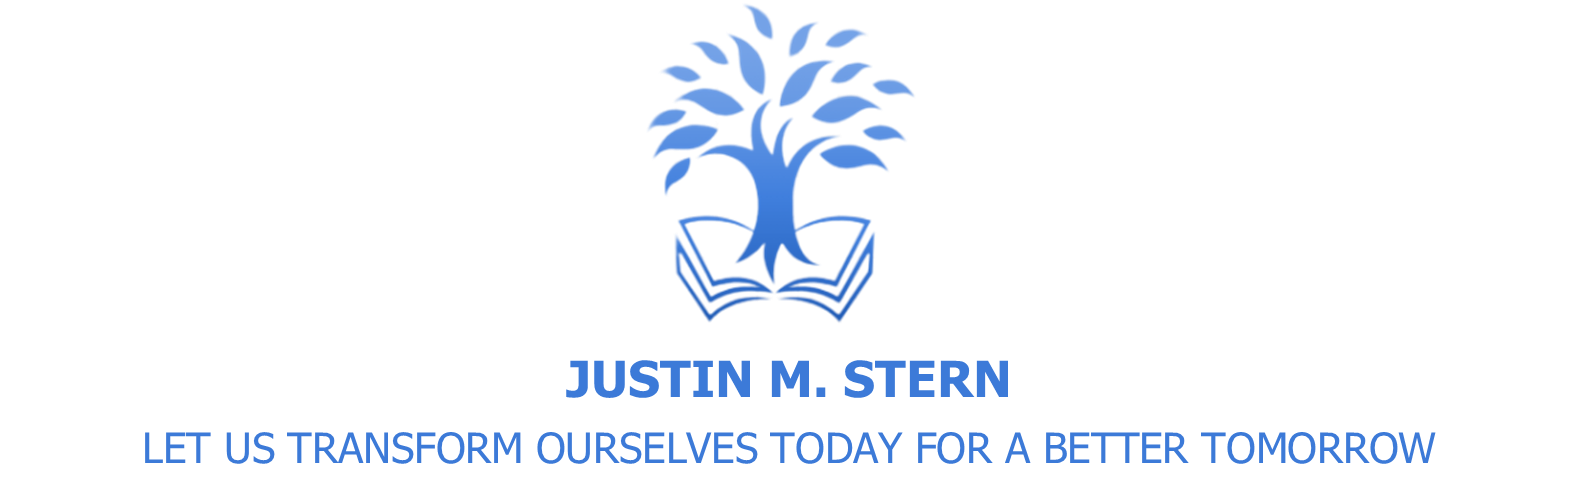 Justin M. Stern